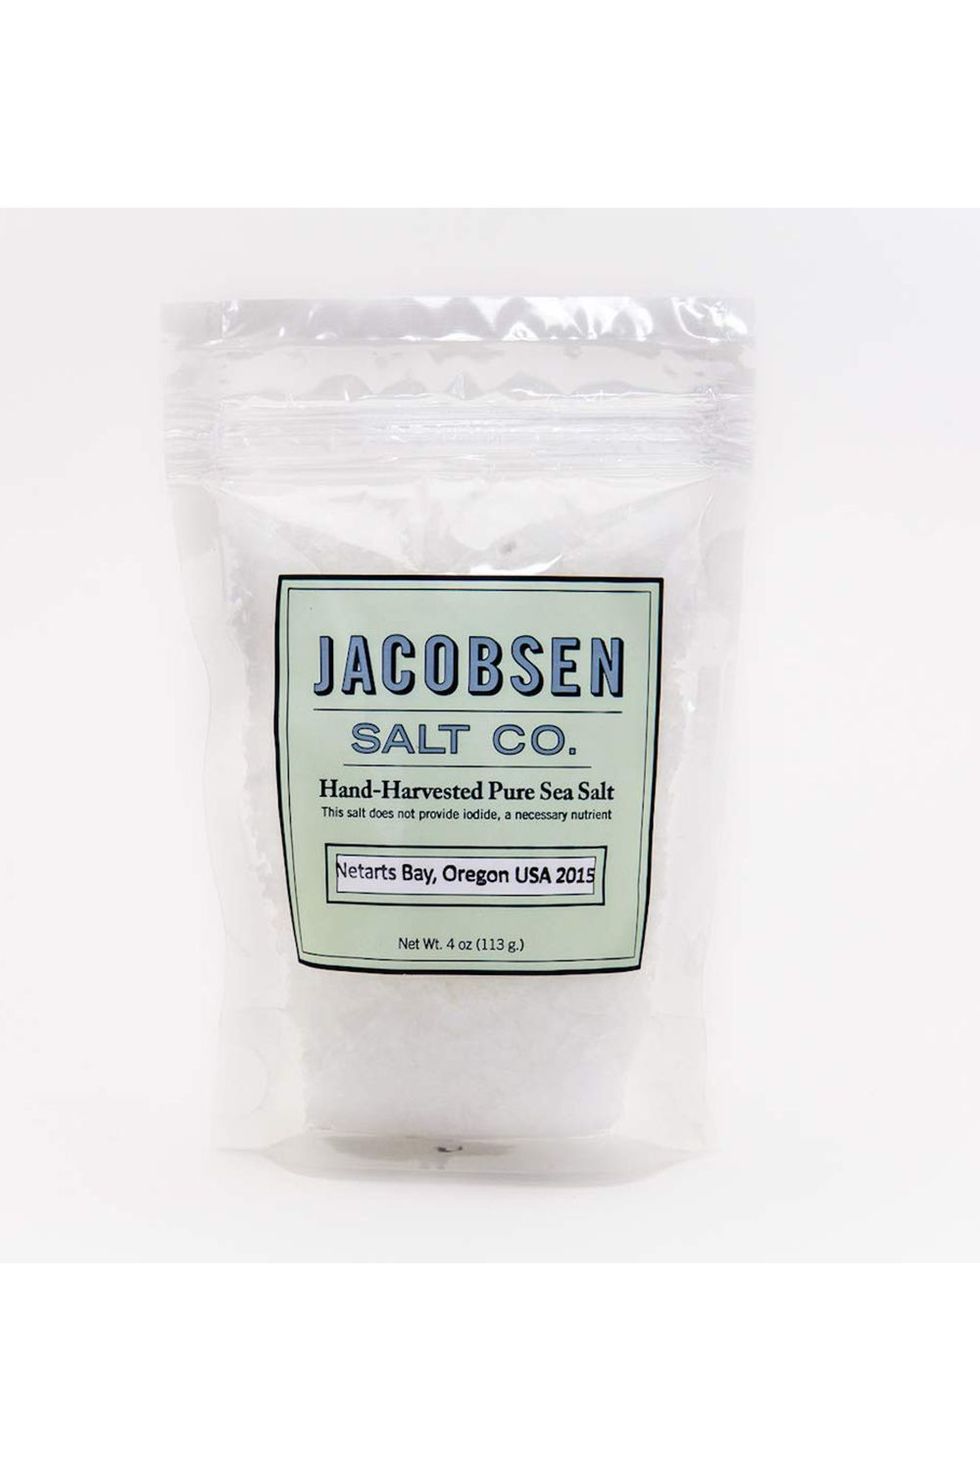 Jacobsen Flakey Salt - 4 Oz Pouch